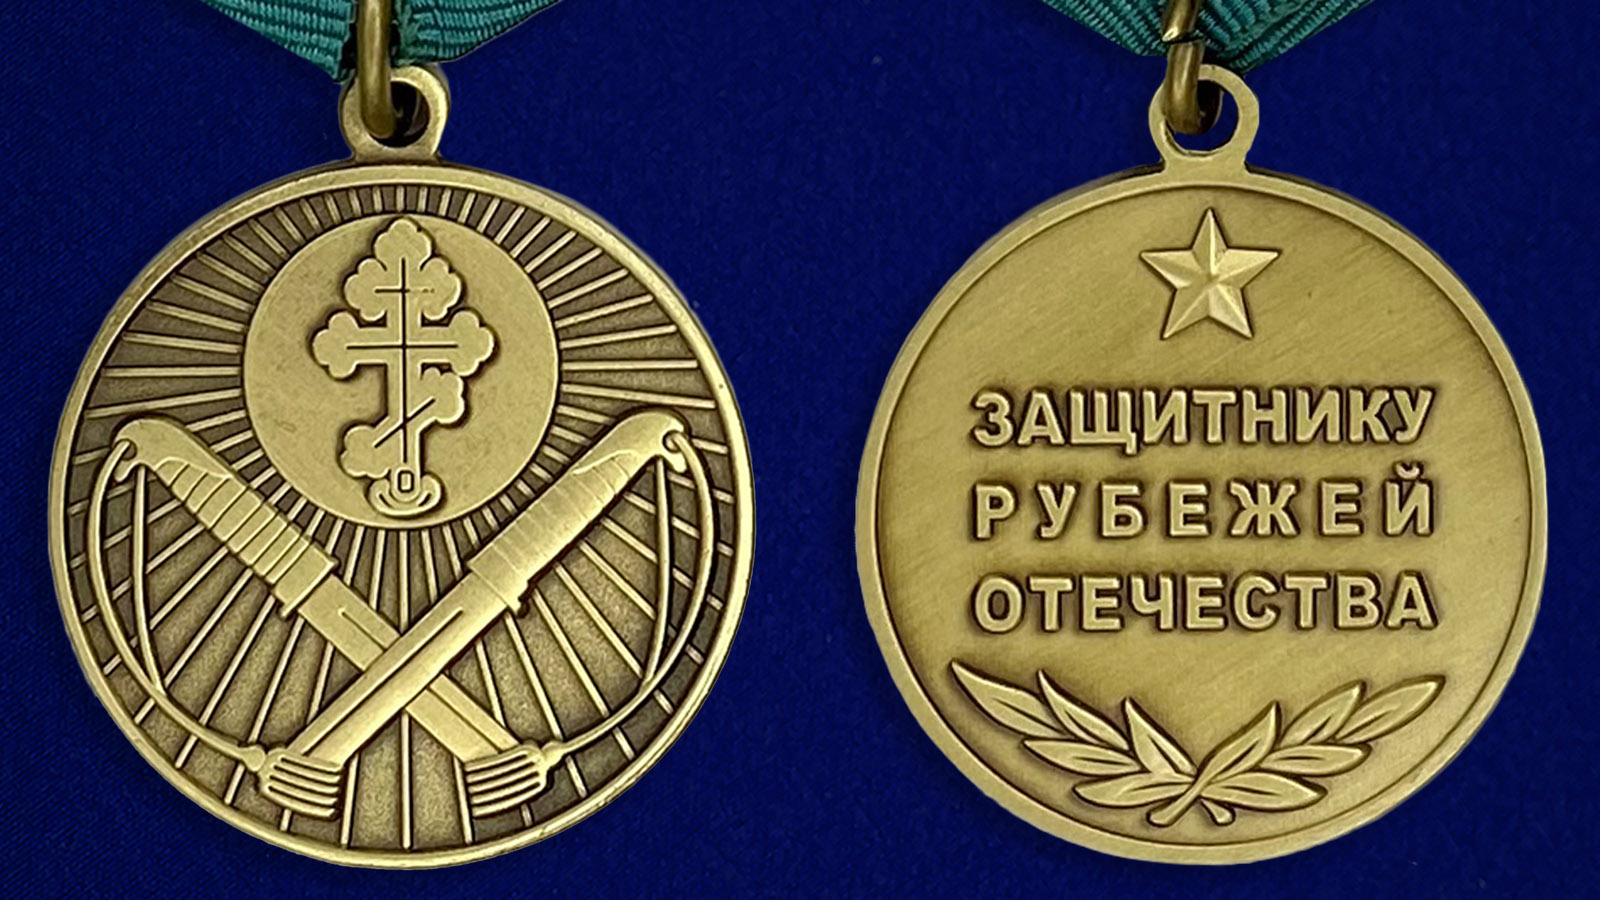 Аверс и реверс медали Защитнику рубежей Отечества